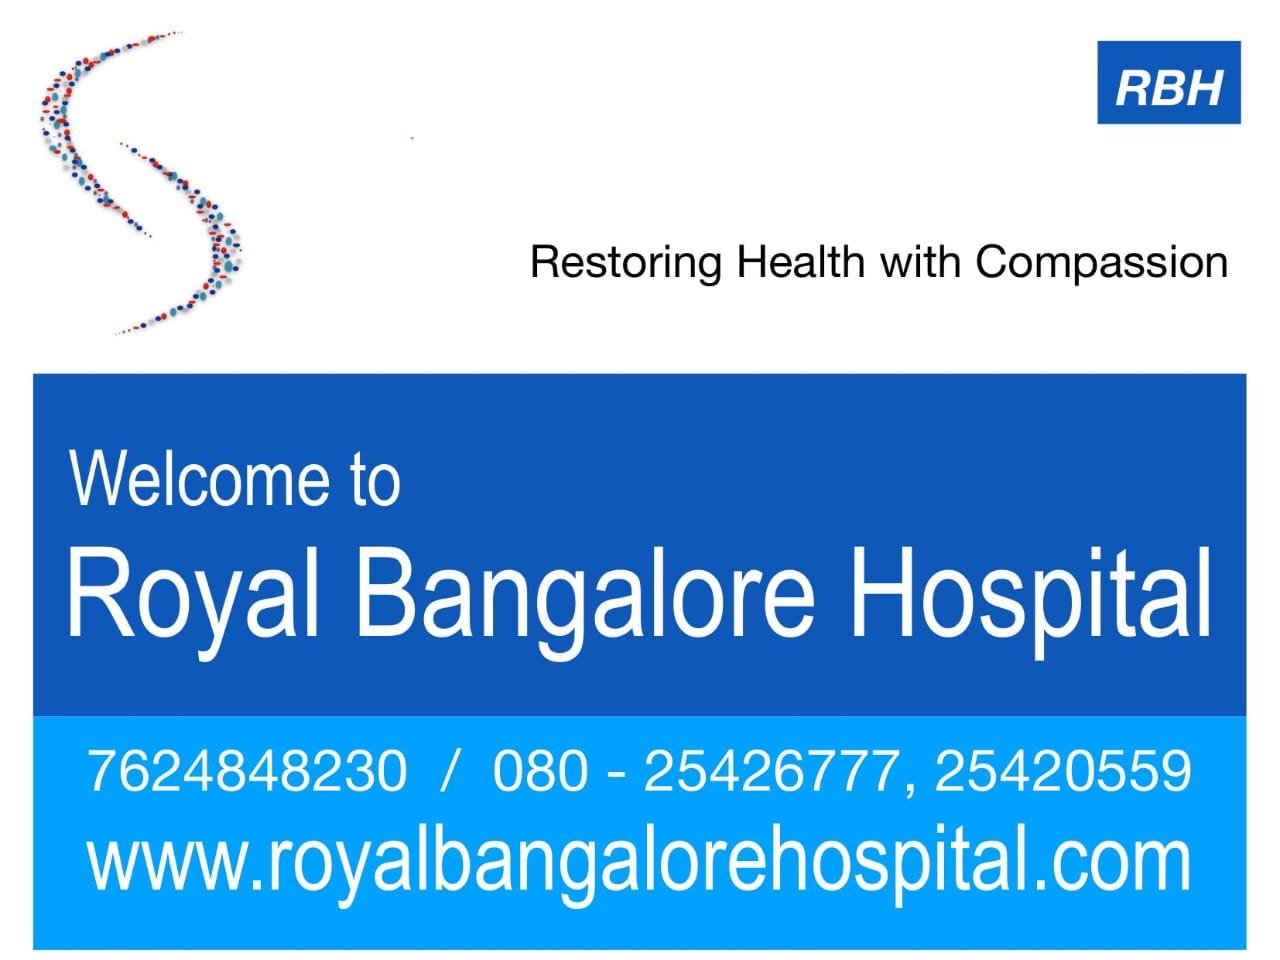 Royal Bangalore Hospital's Images